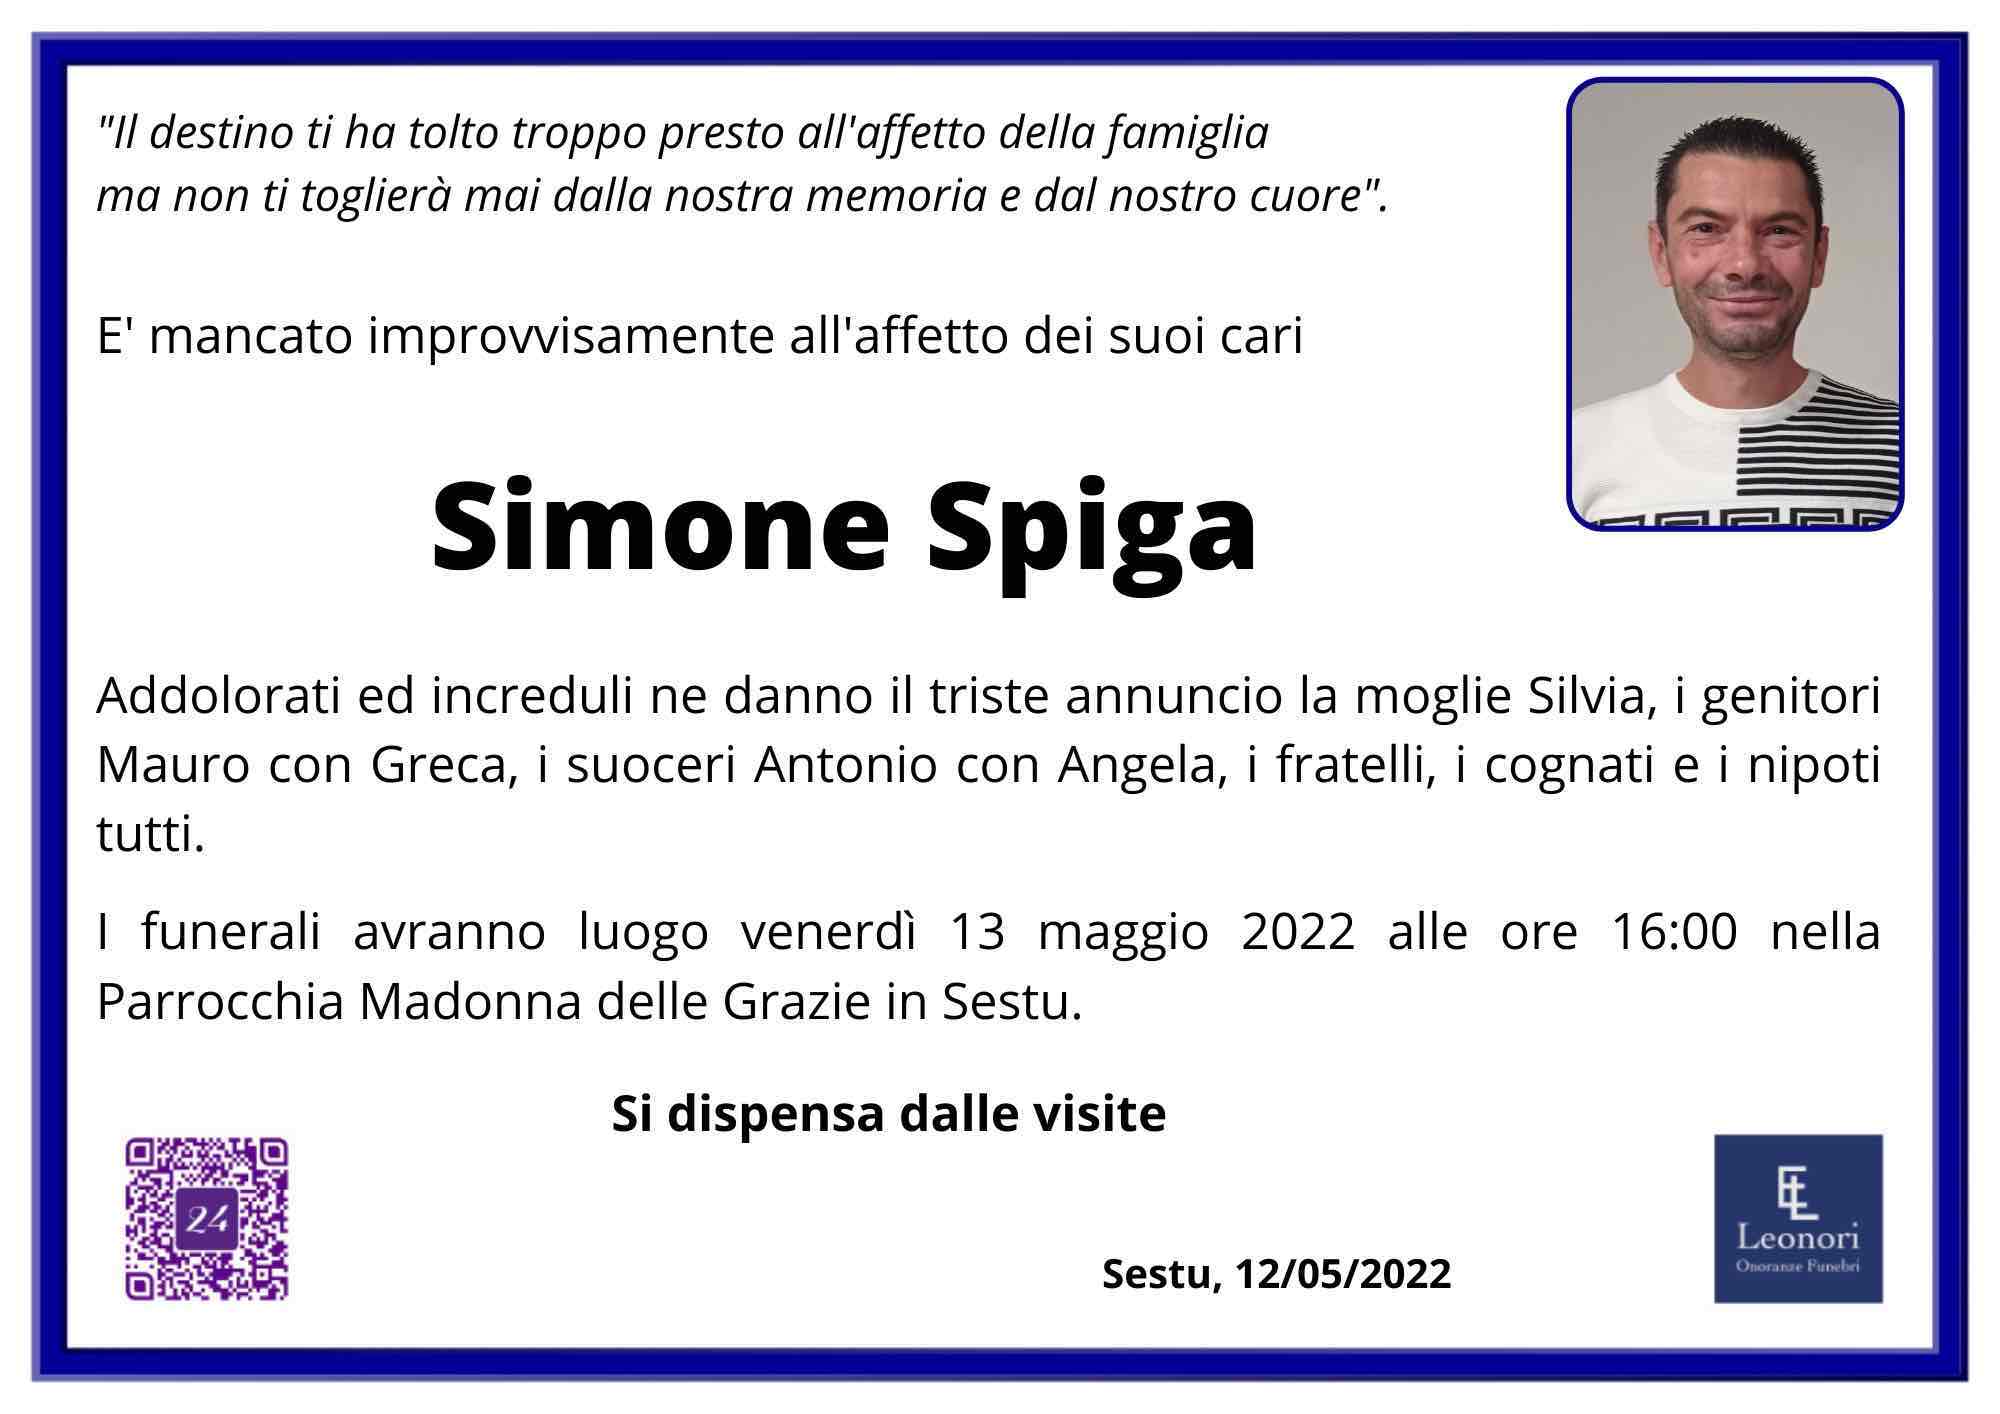 Simone Spiga